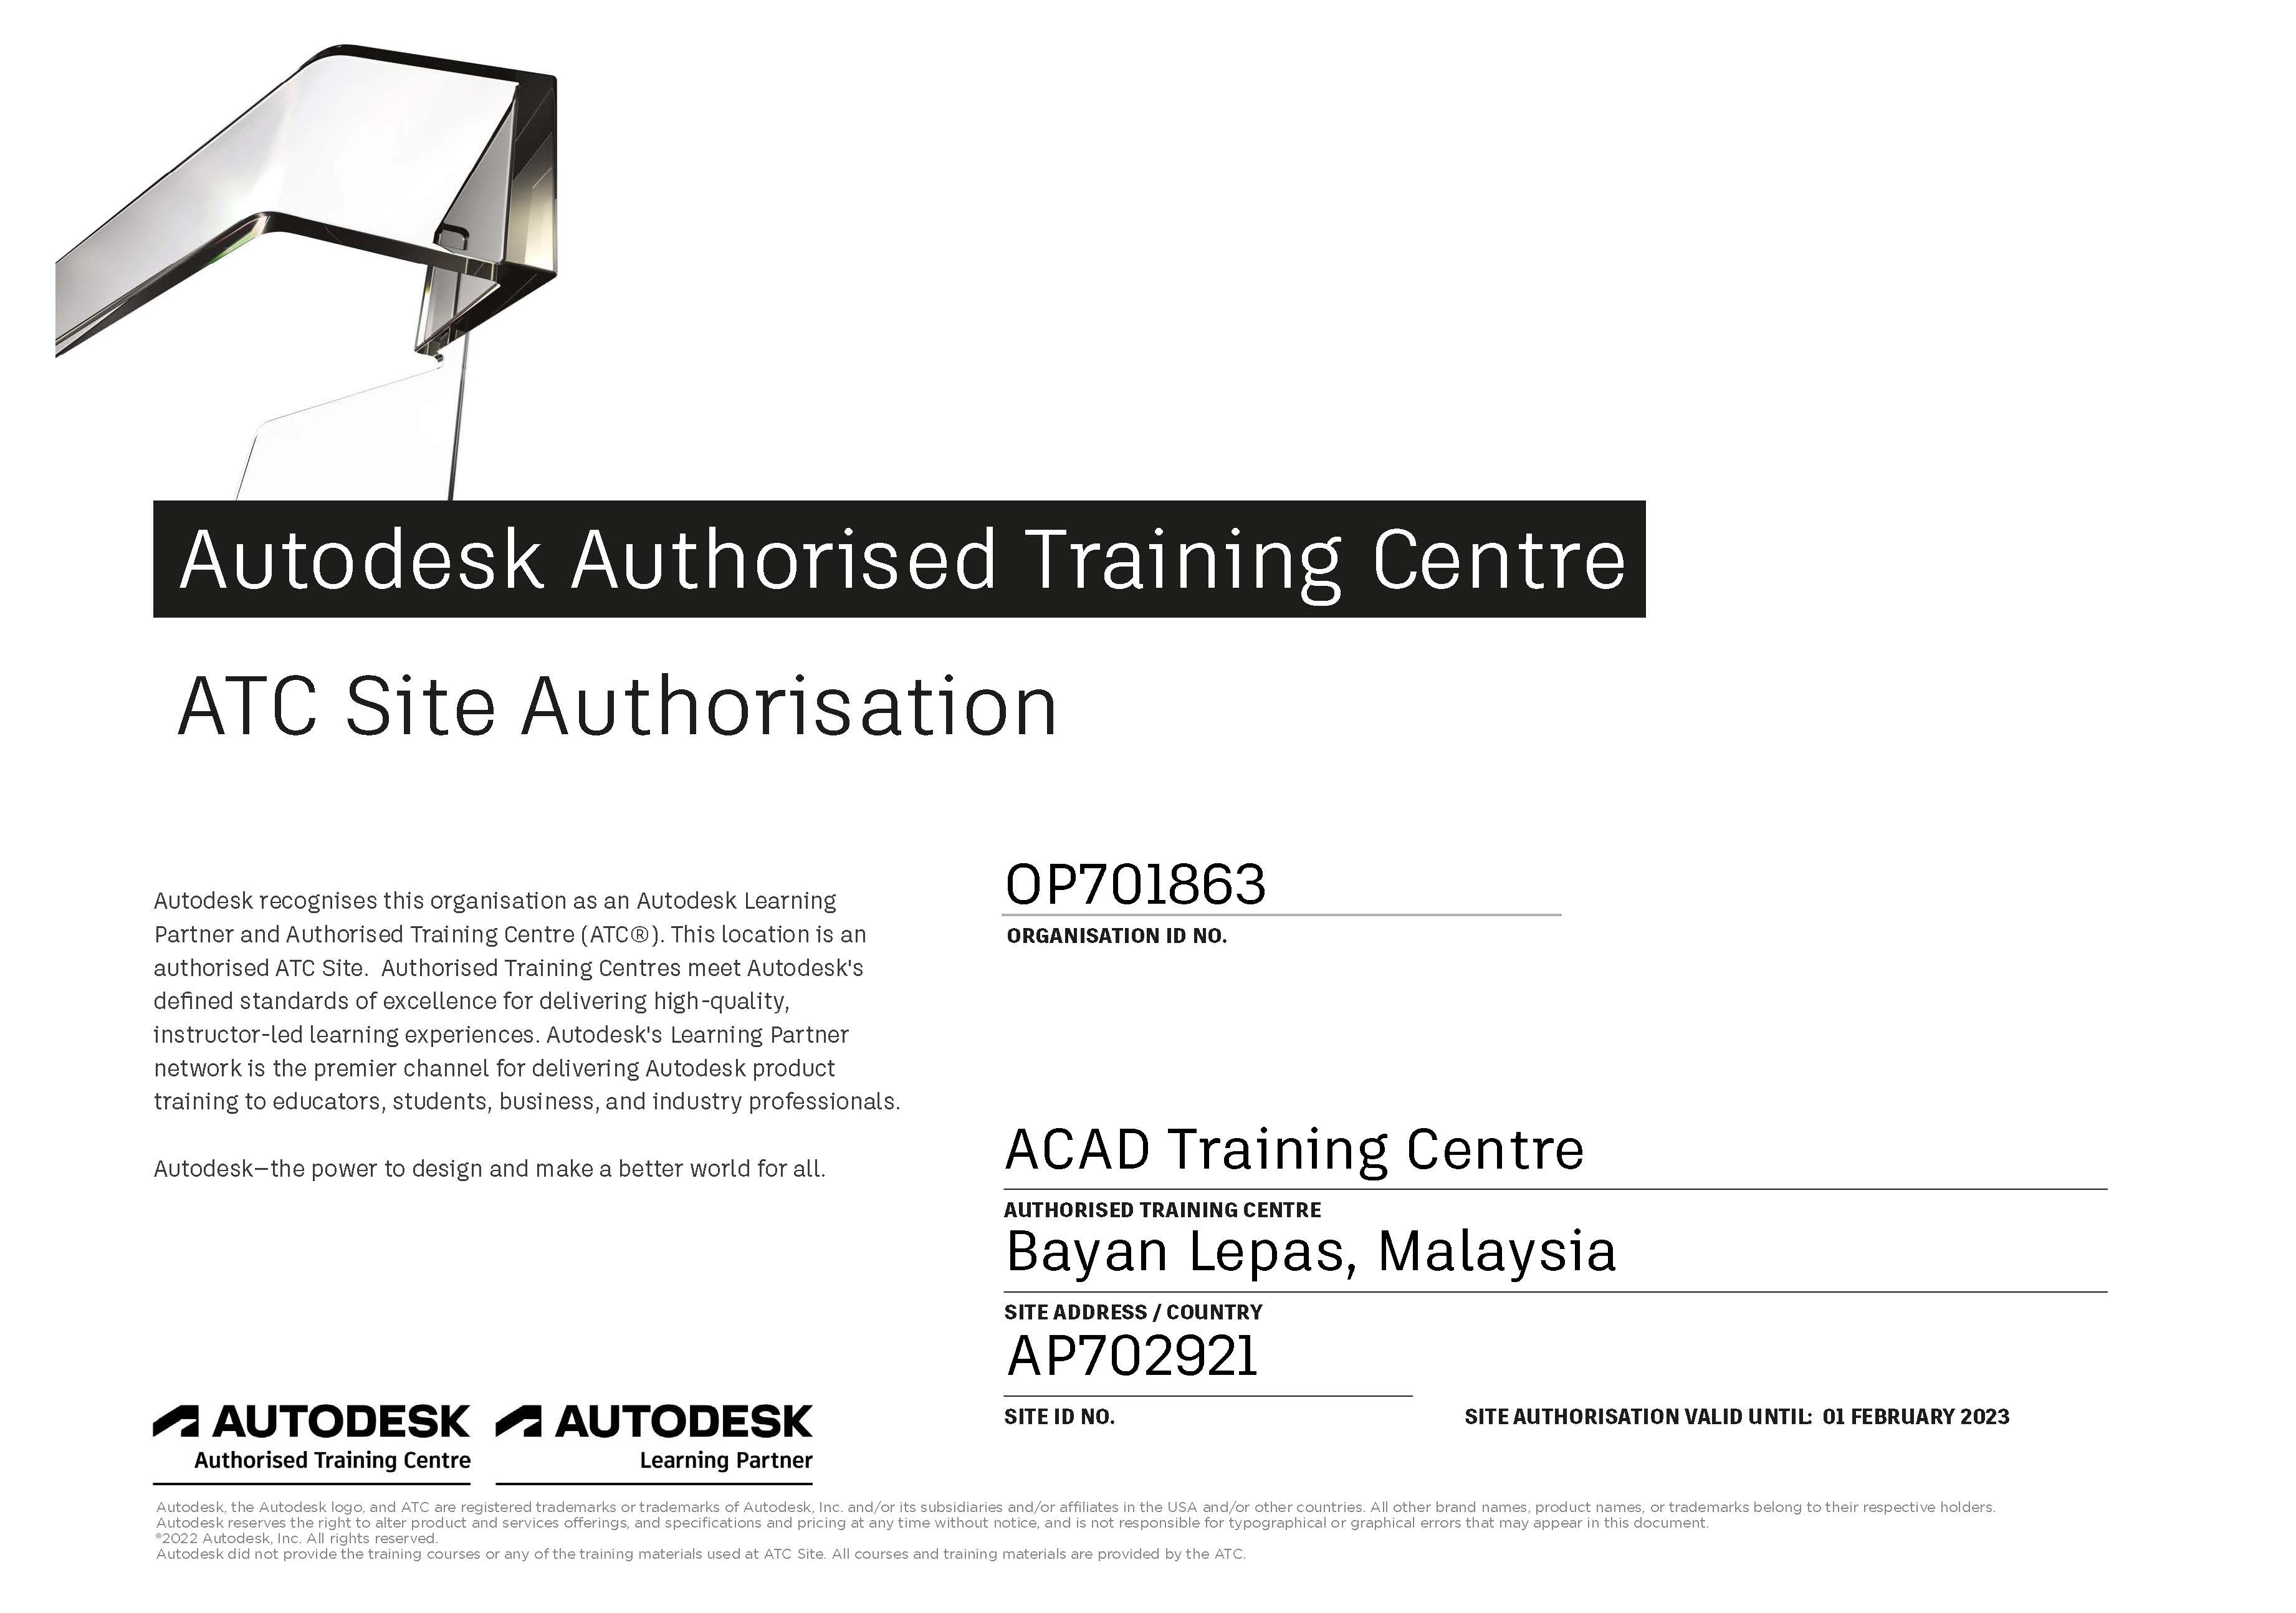 Autodesk Authorized Training Centre